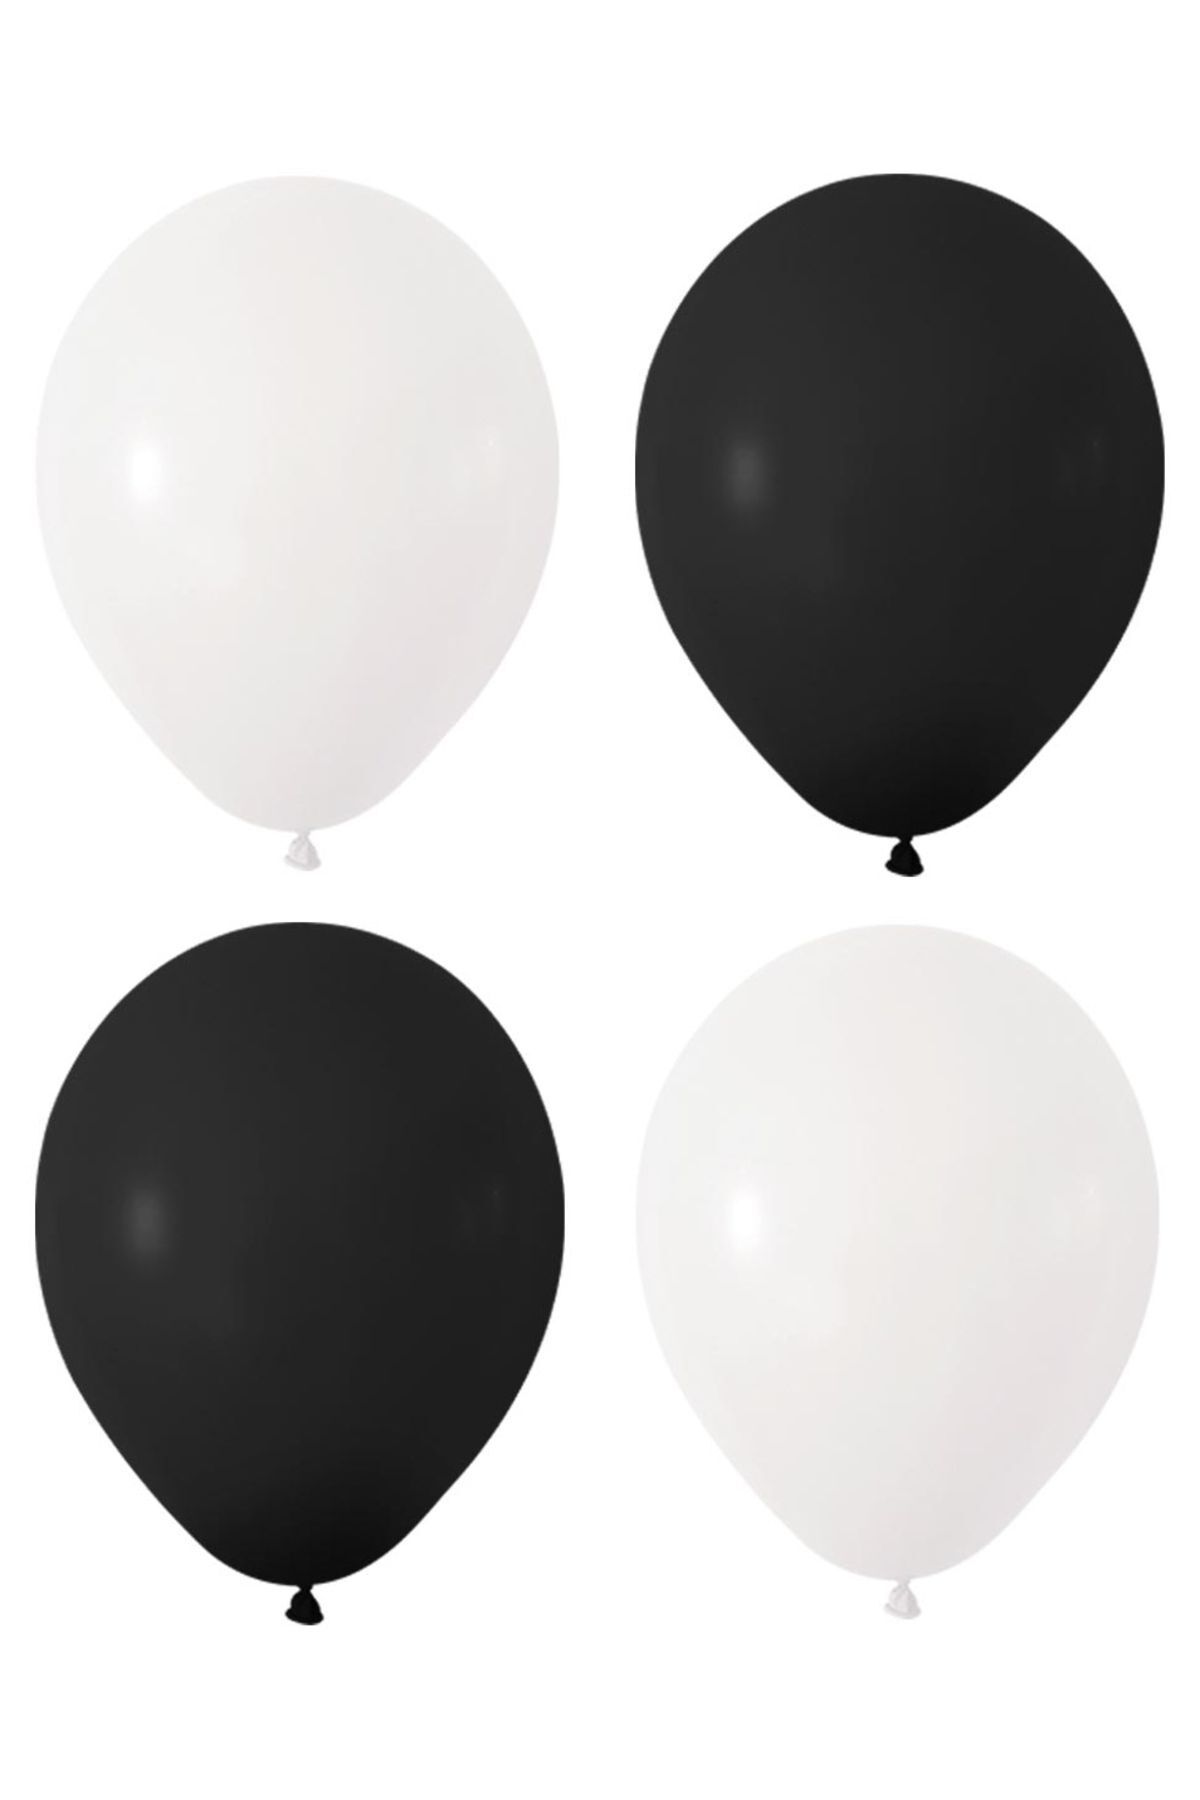 HKNYS Siyah Beyaz Renk Pastel Lateks Balon 50 Adet